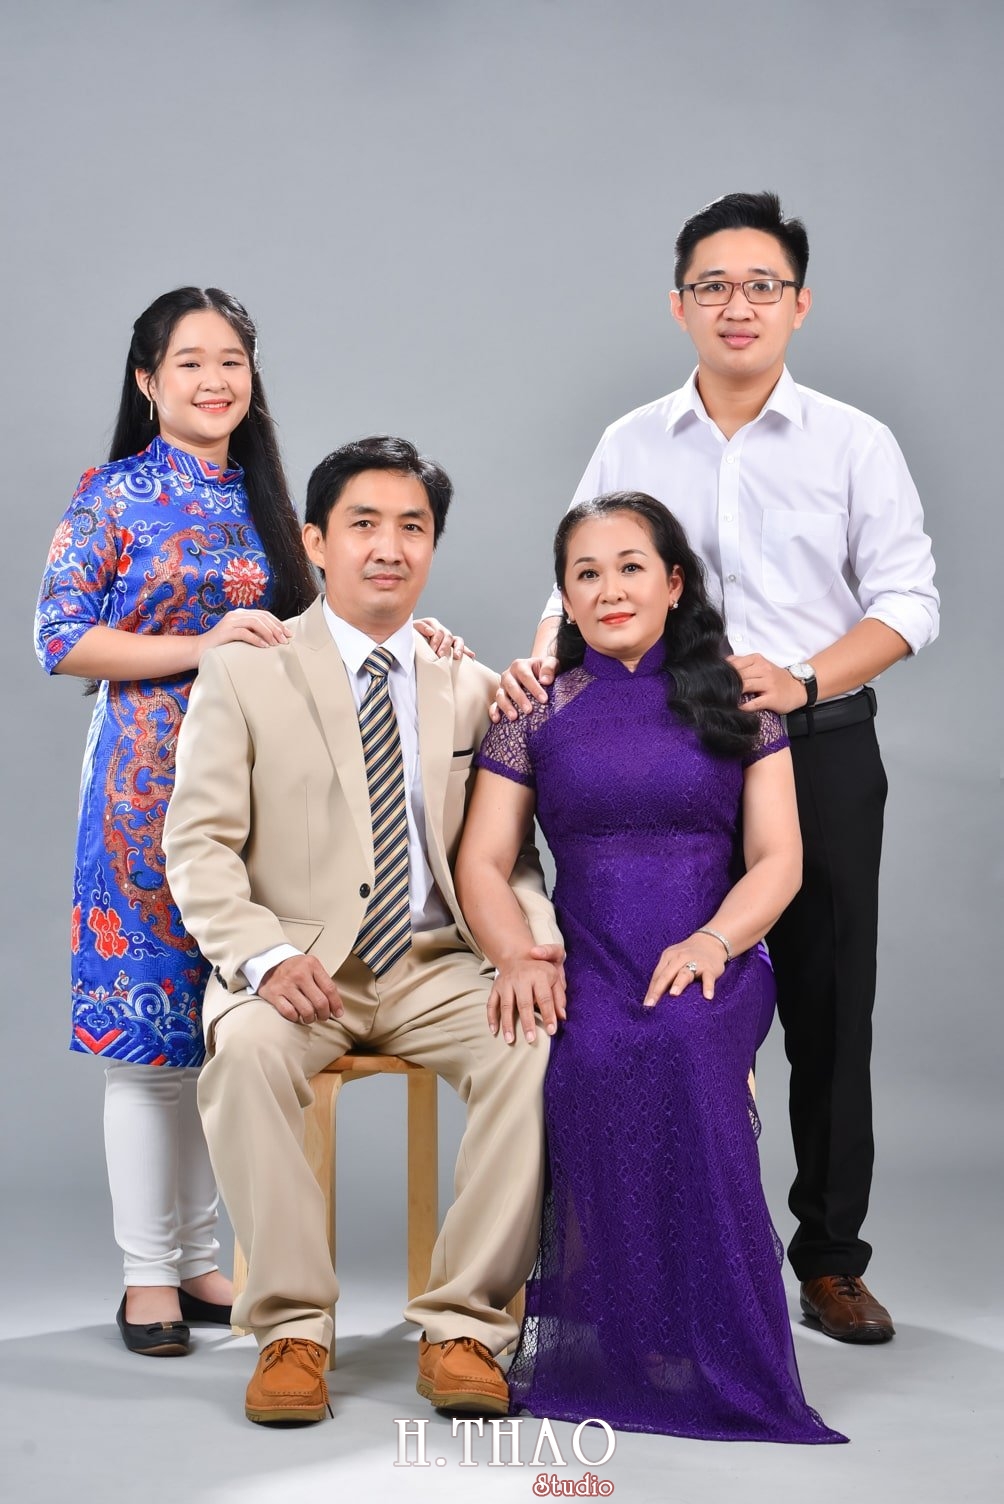 Anh gia dinh 2 min - Chụp ảnh gia đình 4 người trong studio đáng yêu - HThao Studio